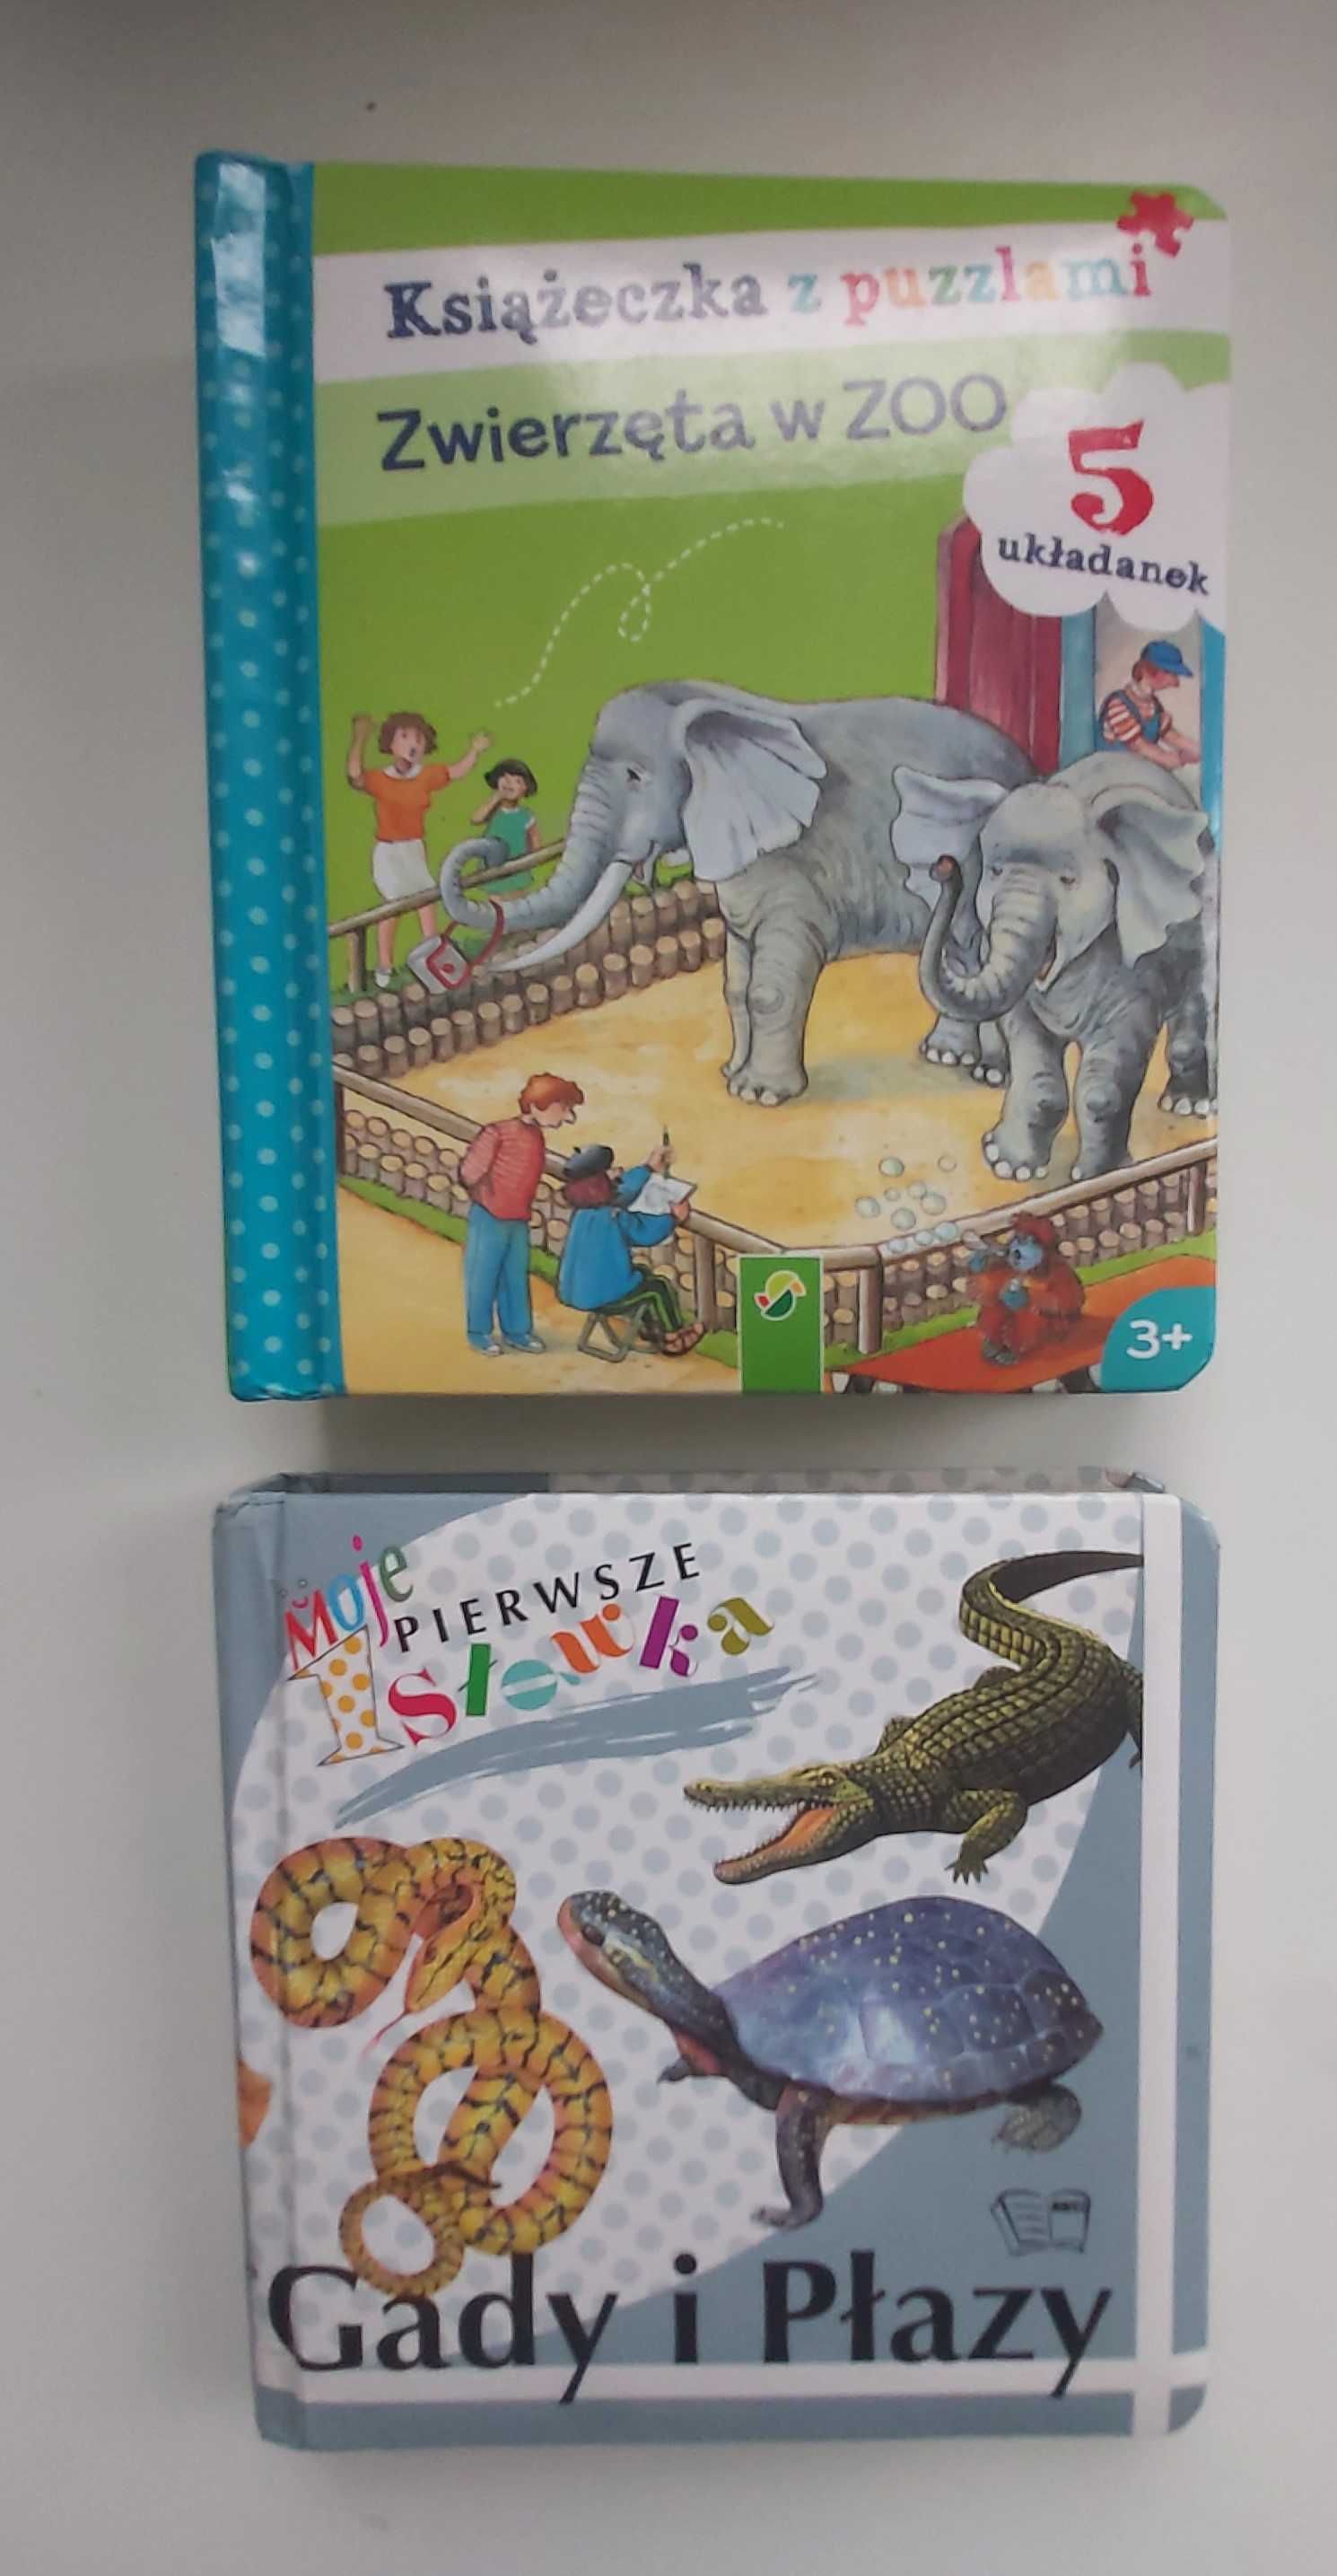 Książeczka z puzzlami "Zwierzęta w zoo" i "Gady i Płazy"